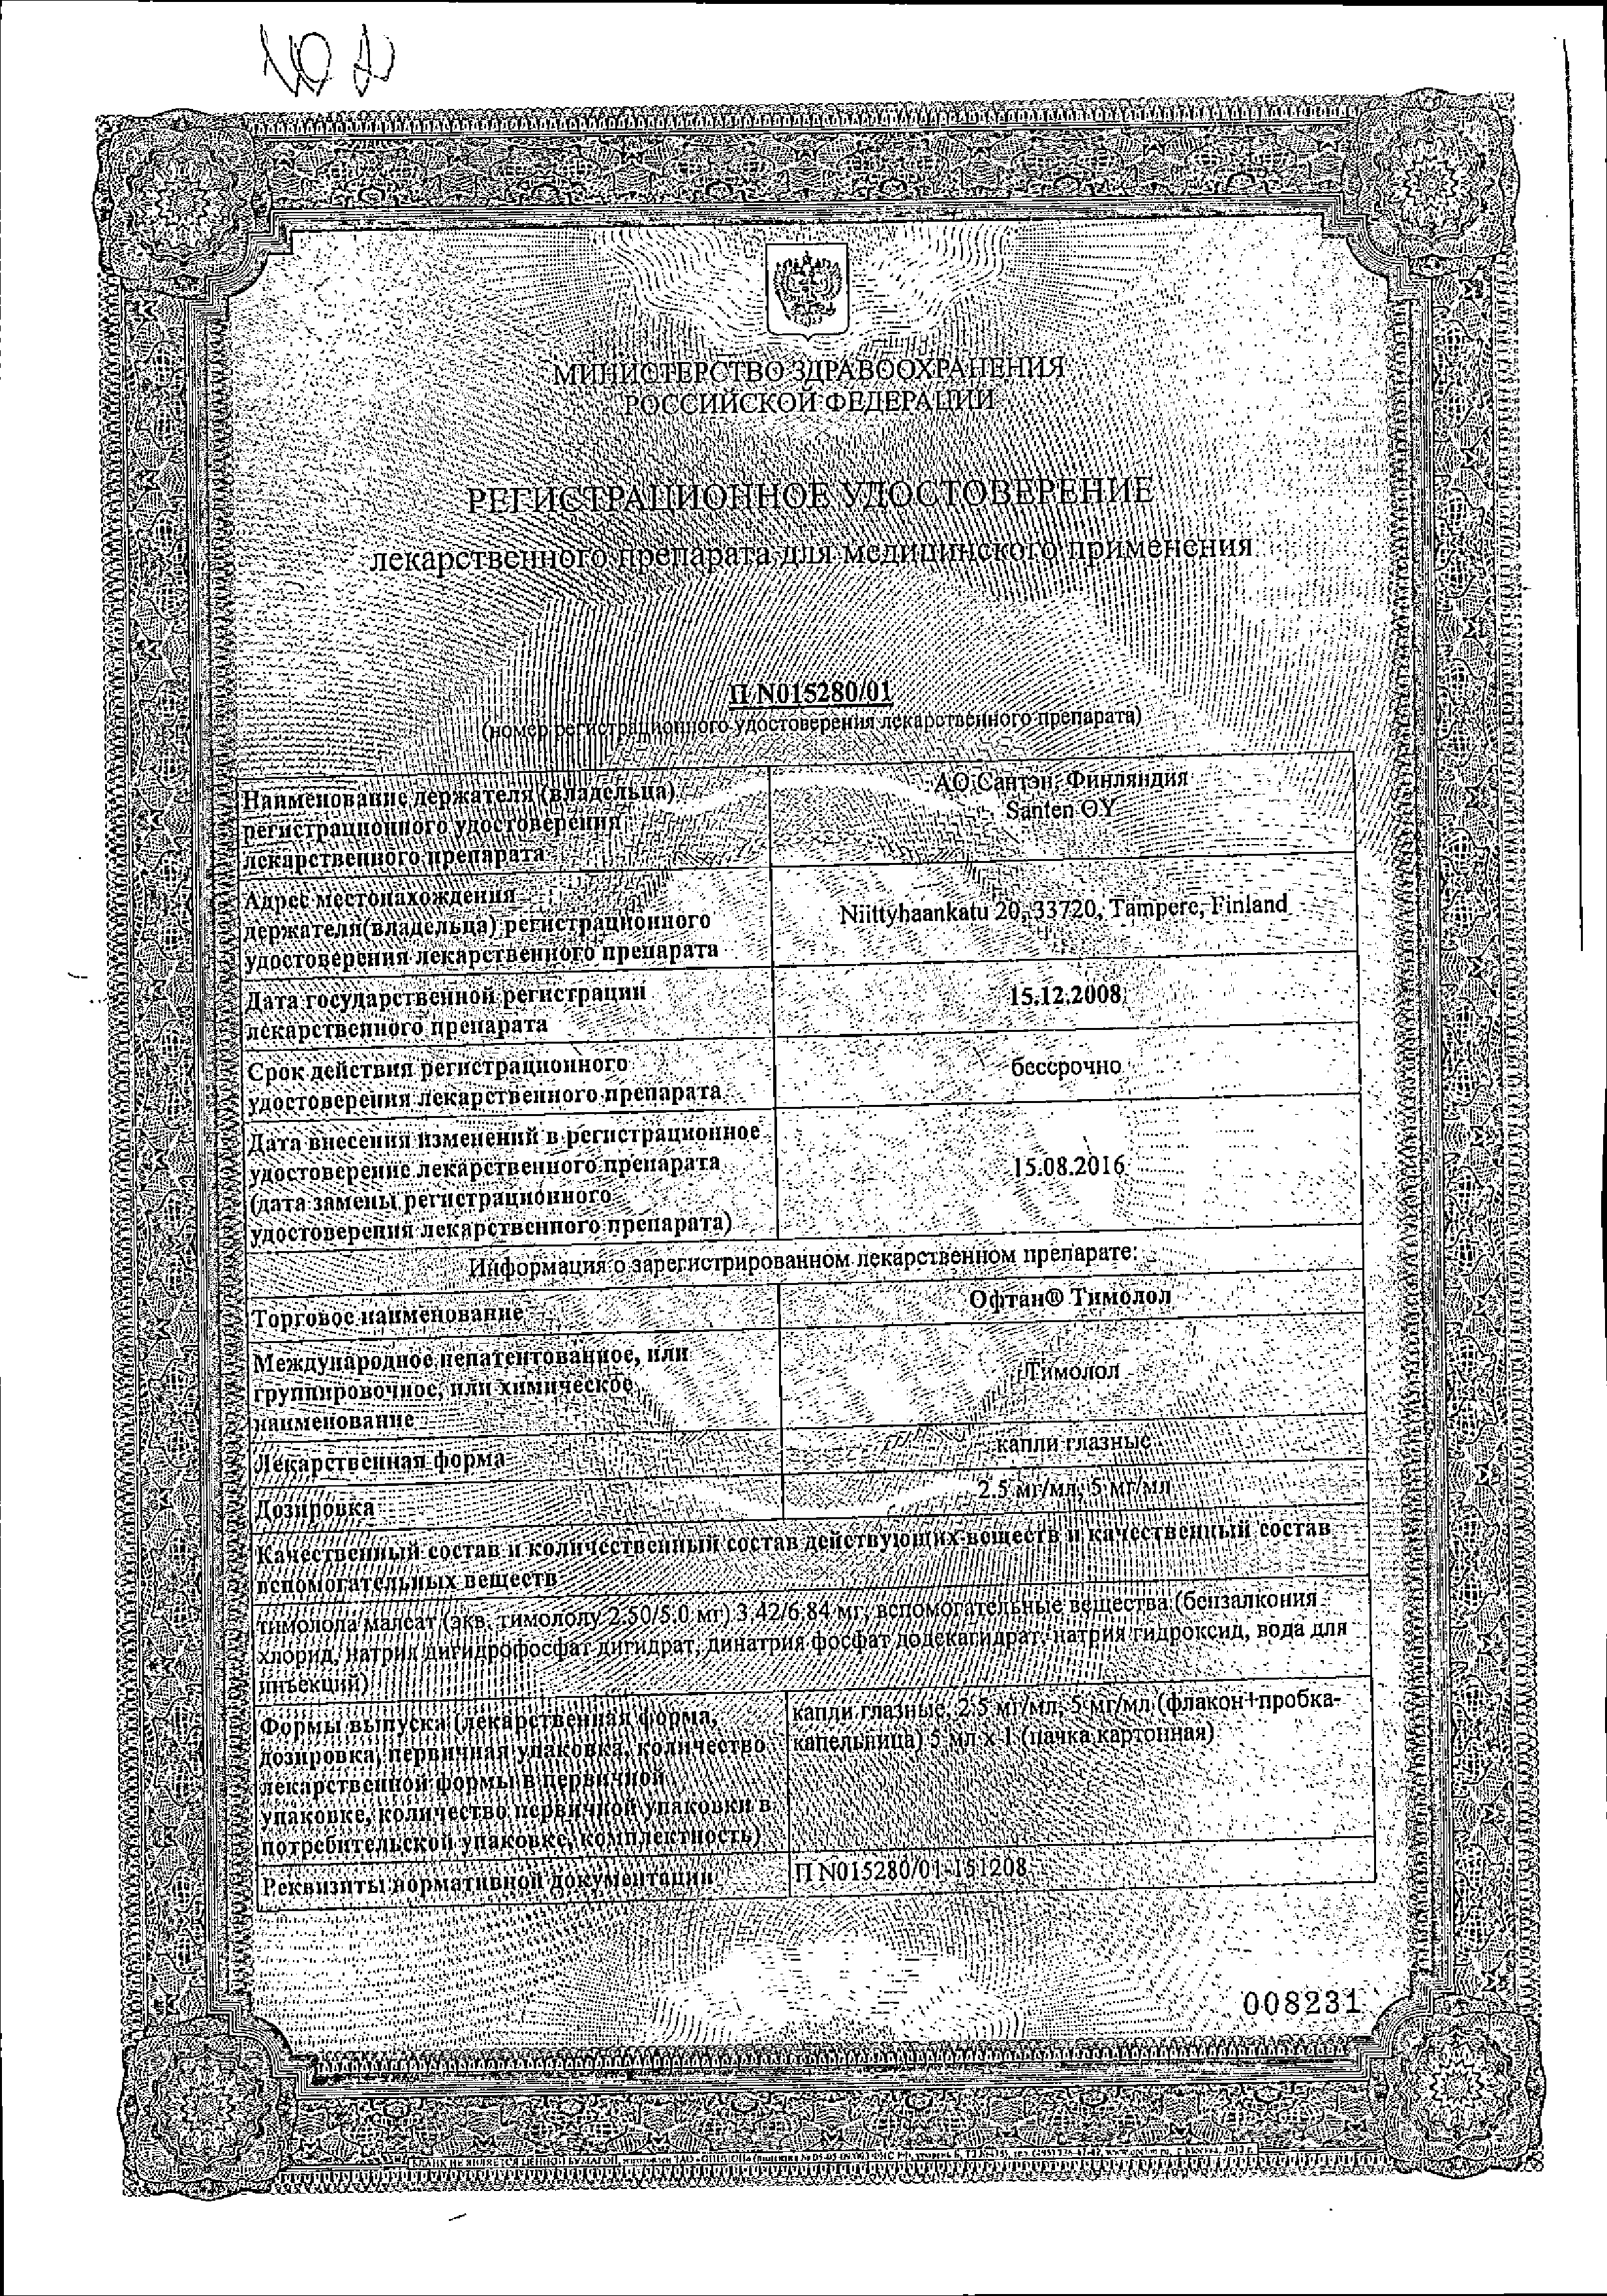 Офтан Тимолол сертификат